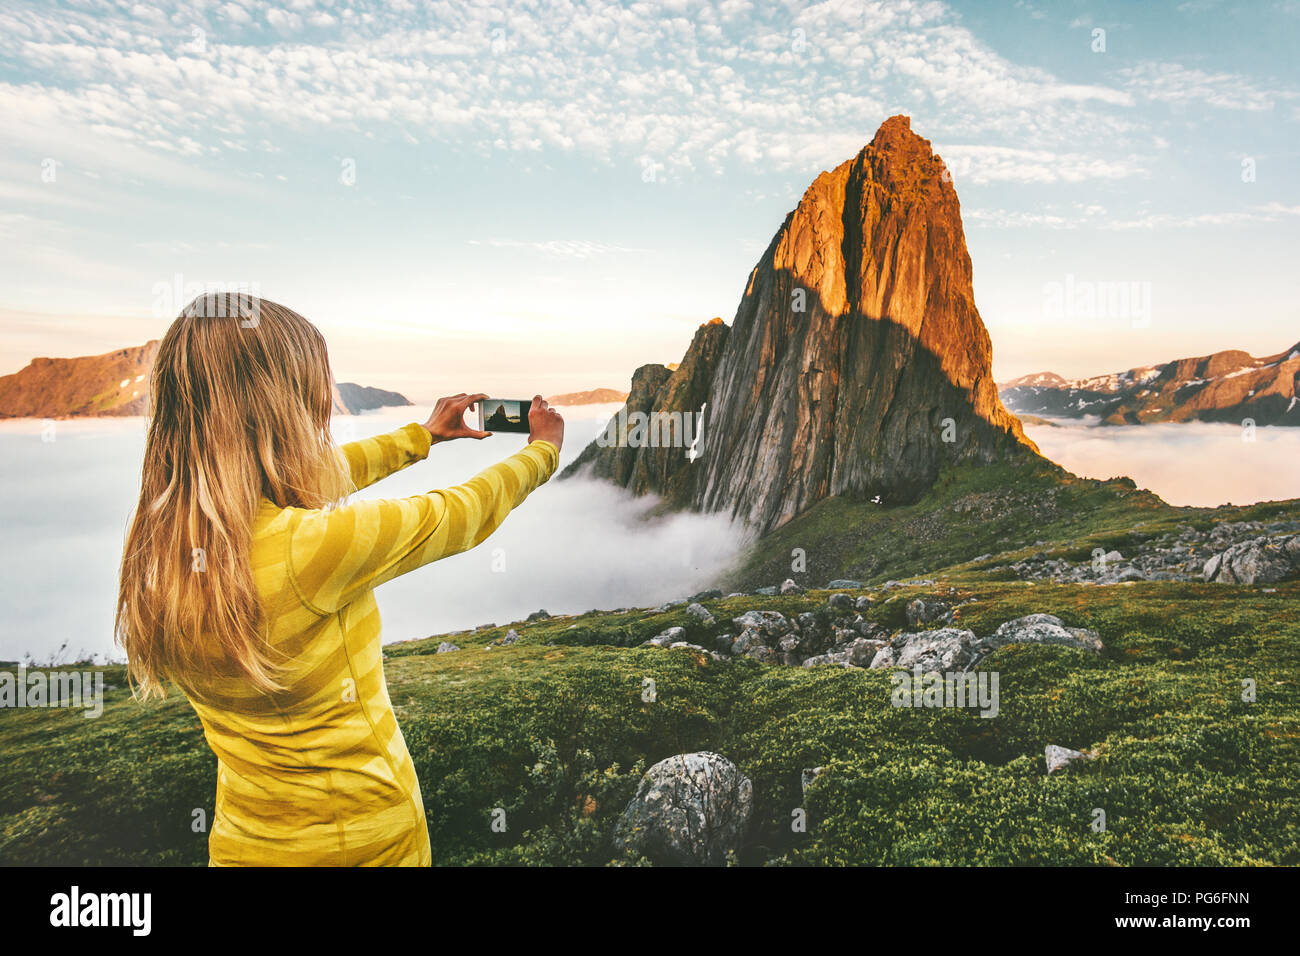 Donna traveler prendendo foto tramite smartphone esplorando il tramonto montagne rocciose in Norvegia viaggio d avventura vacanze estive in viaggio lifestyle Foto Stock